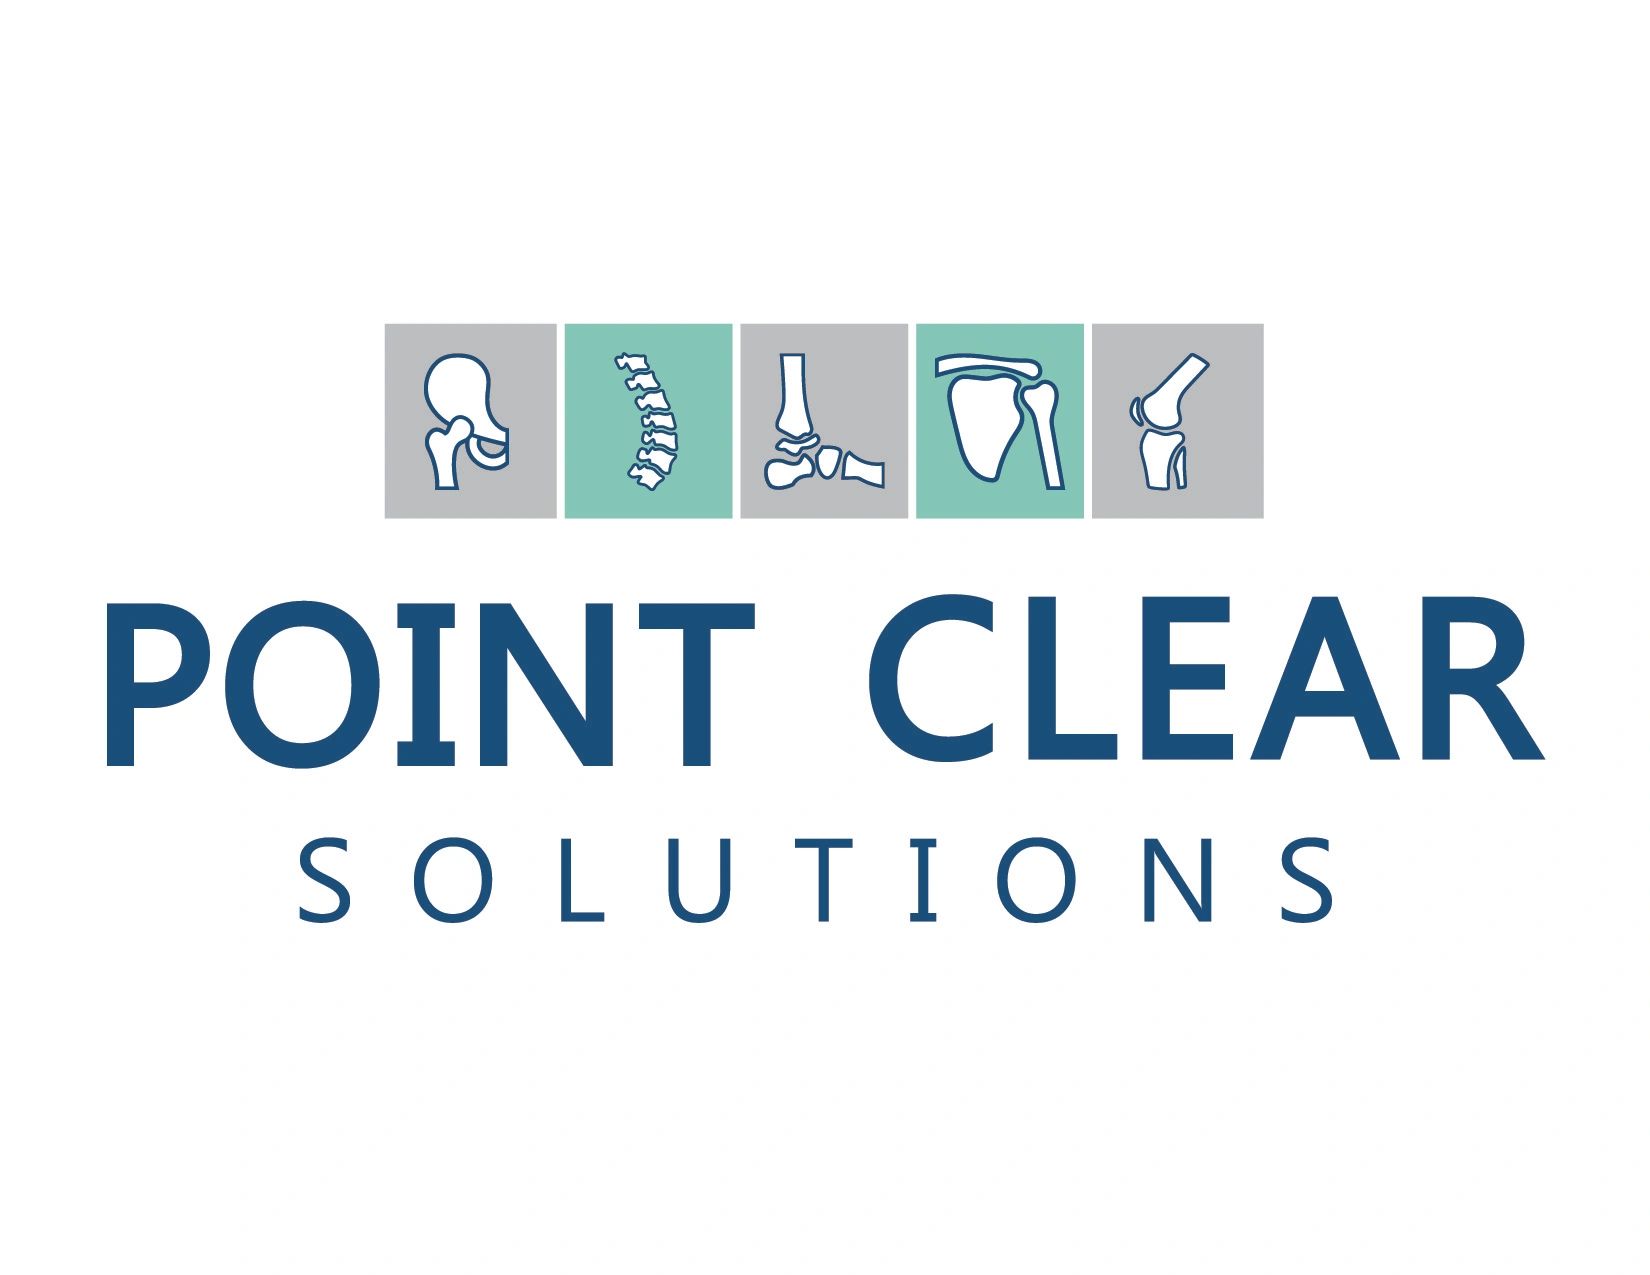 Point Clear Solutions  Point Clear Solutions